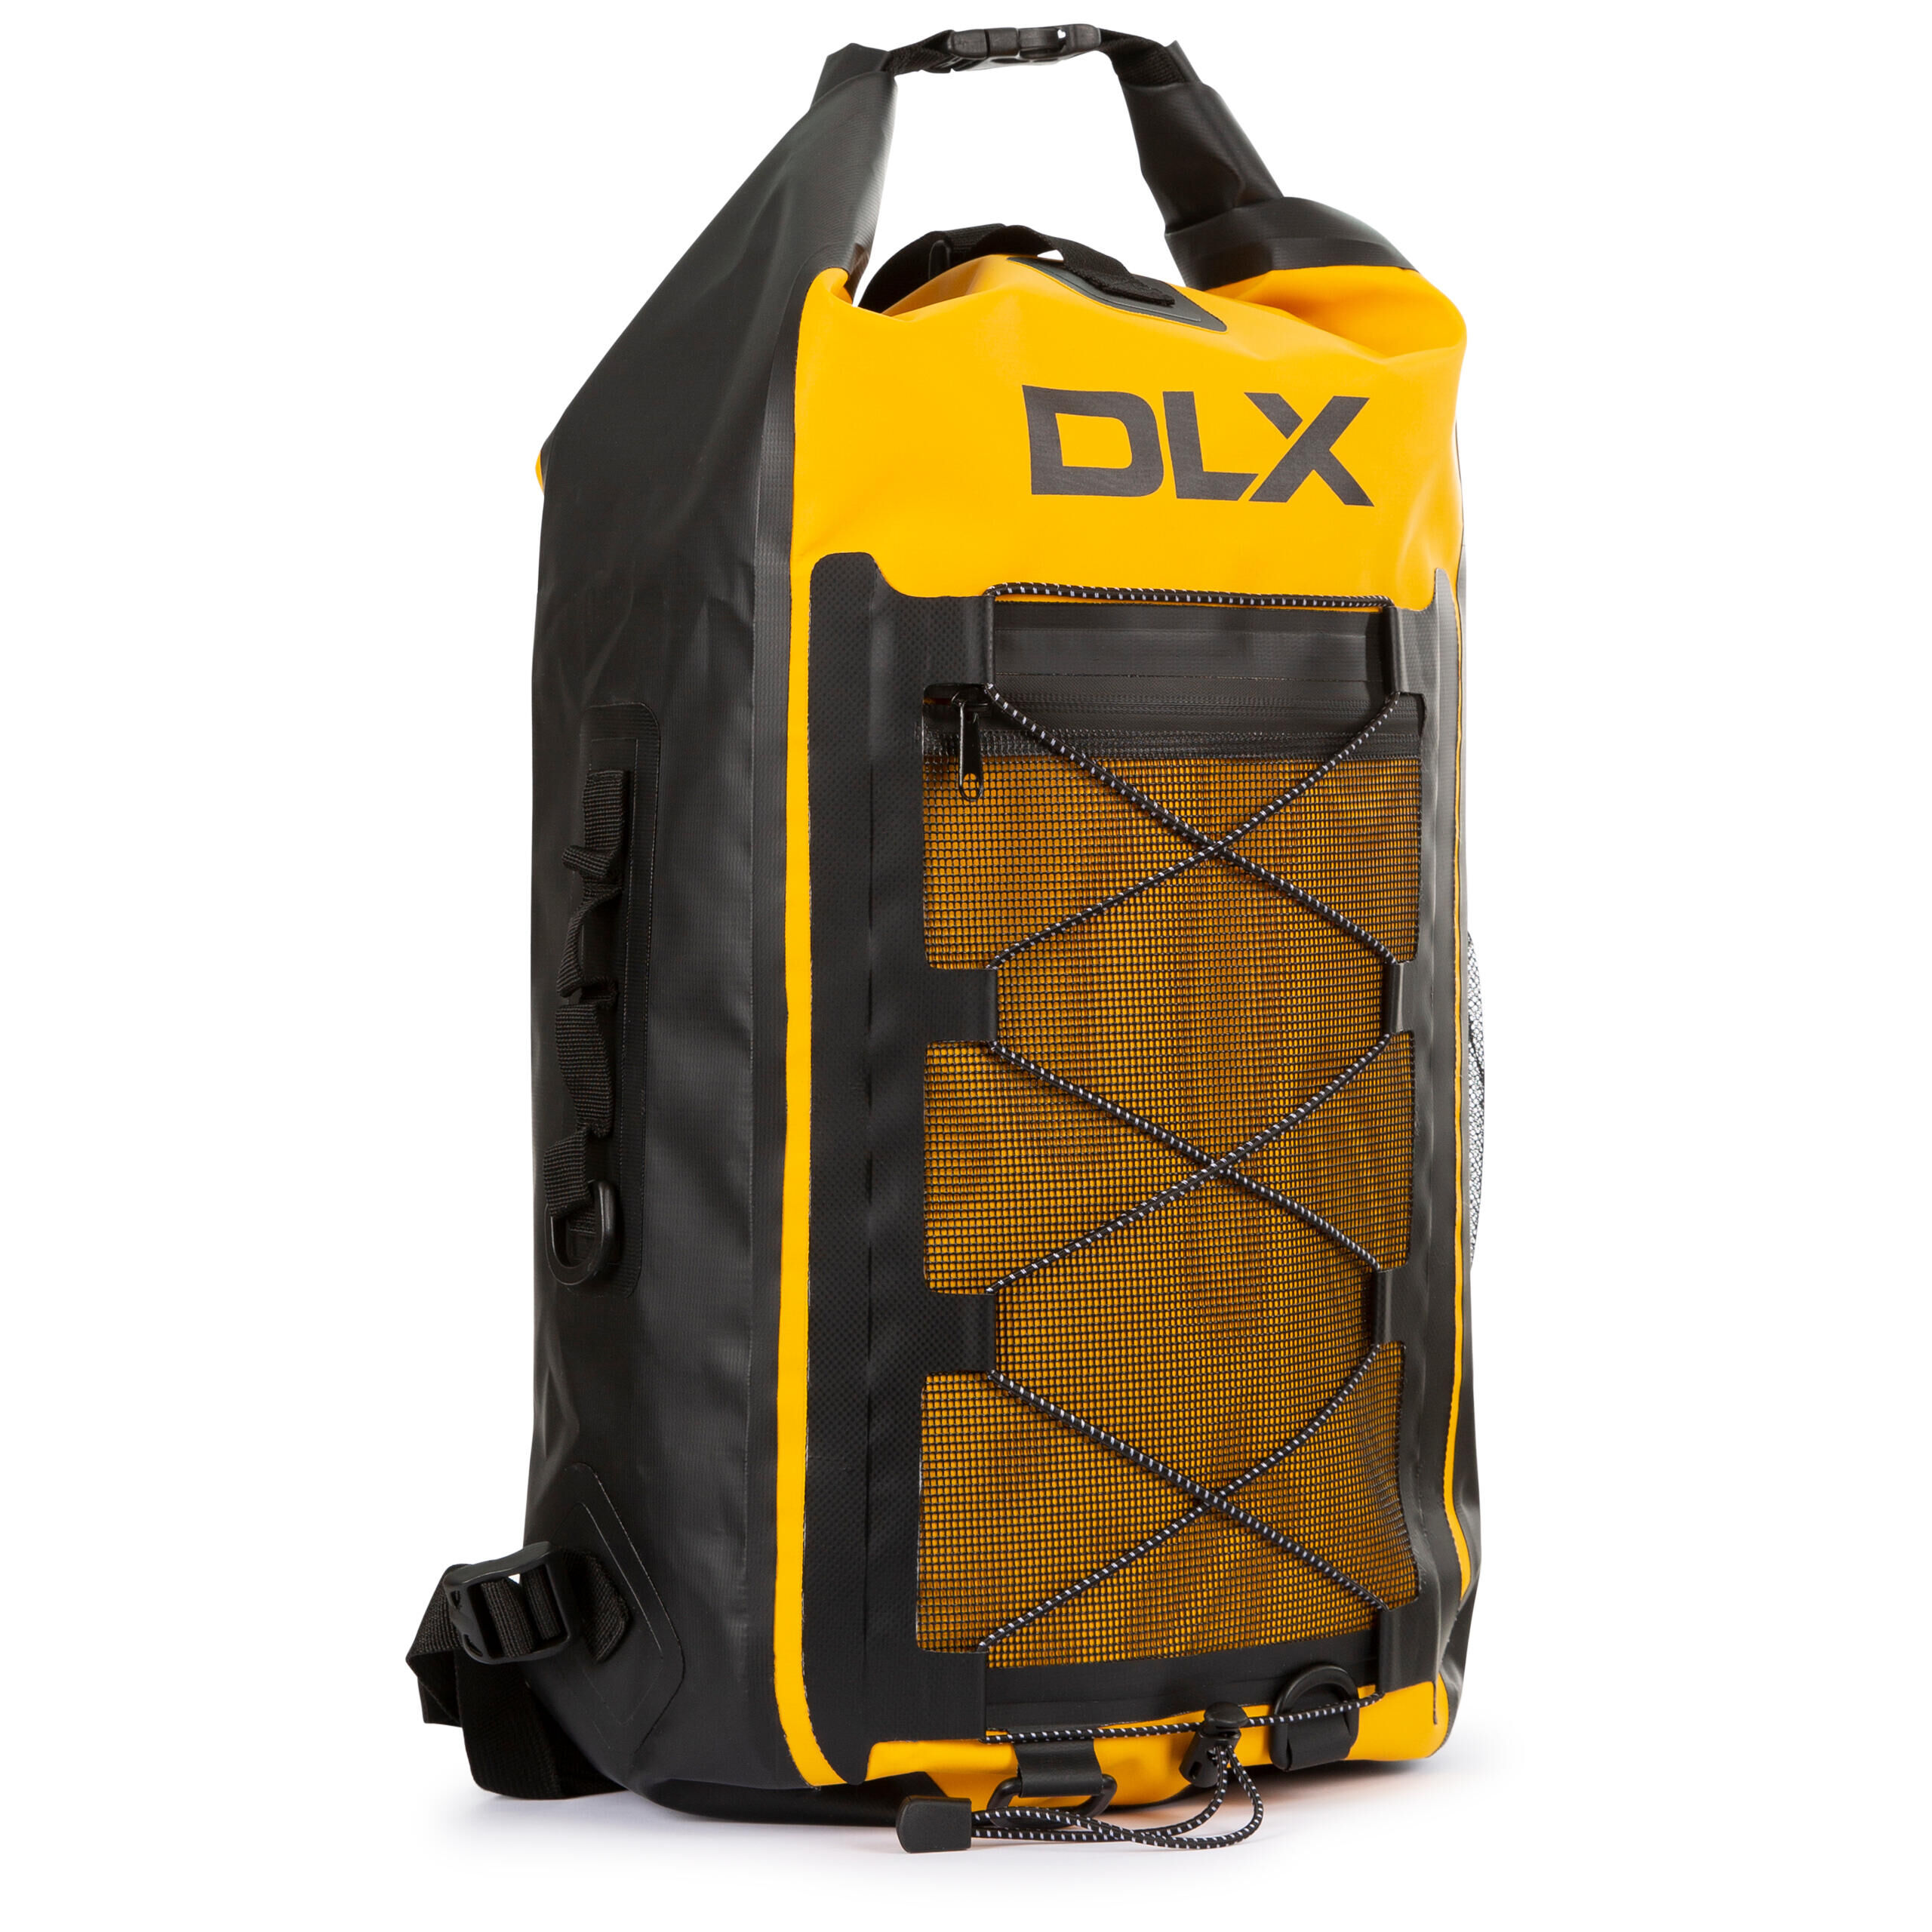 DLX 26L Rucksack Waterproof Padded Back Shoulder Straps Eredine